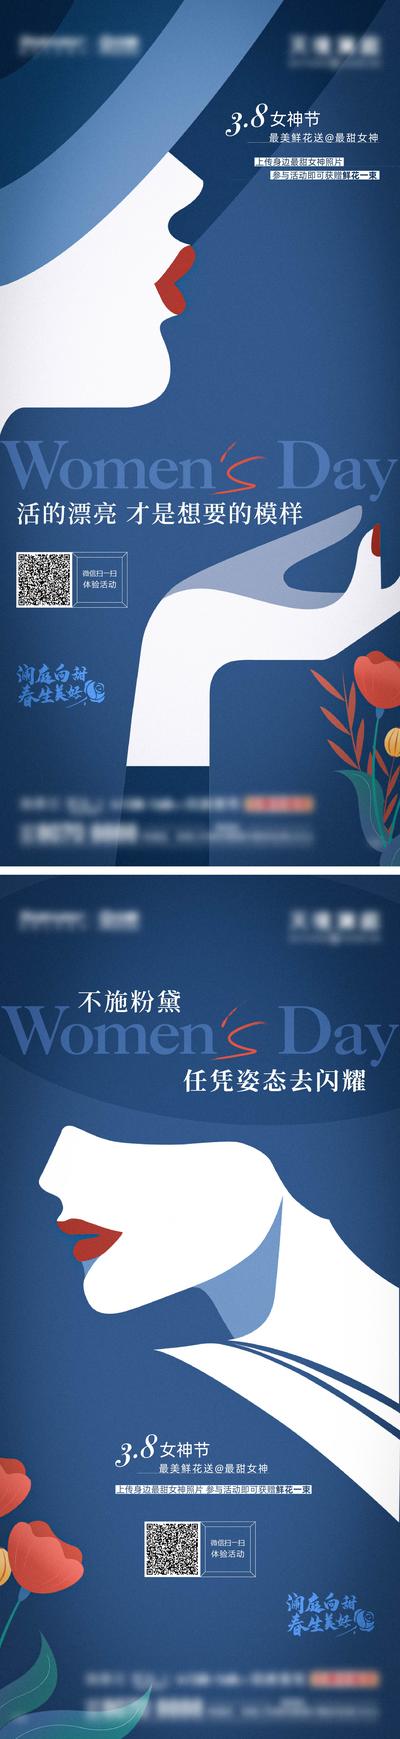 南门网 海报 房地产 公历节日 三八 女神节 妇女节 插画